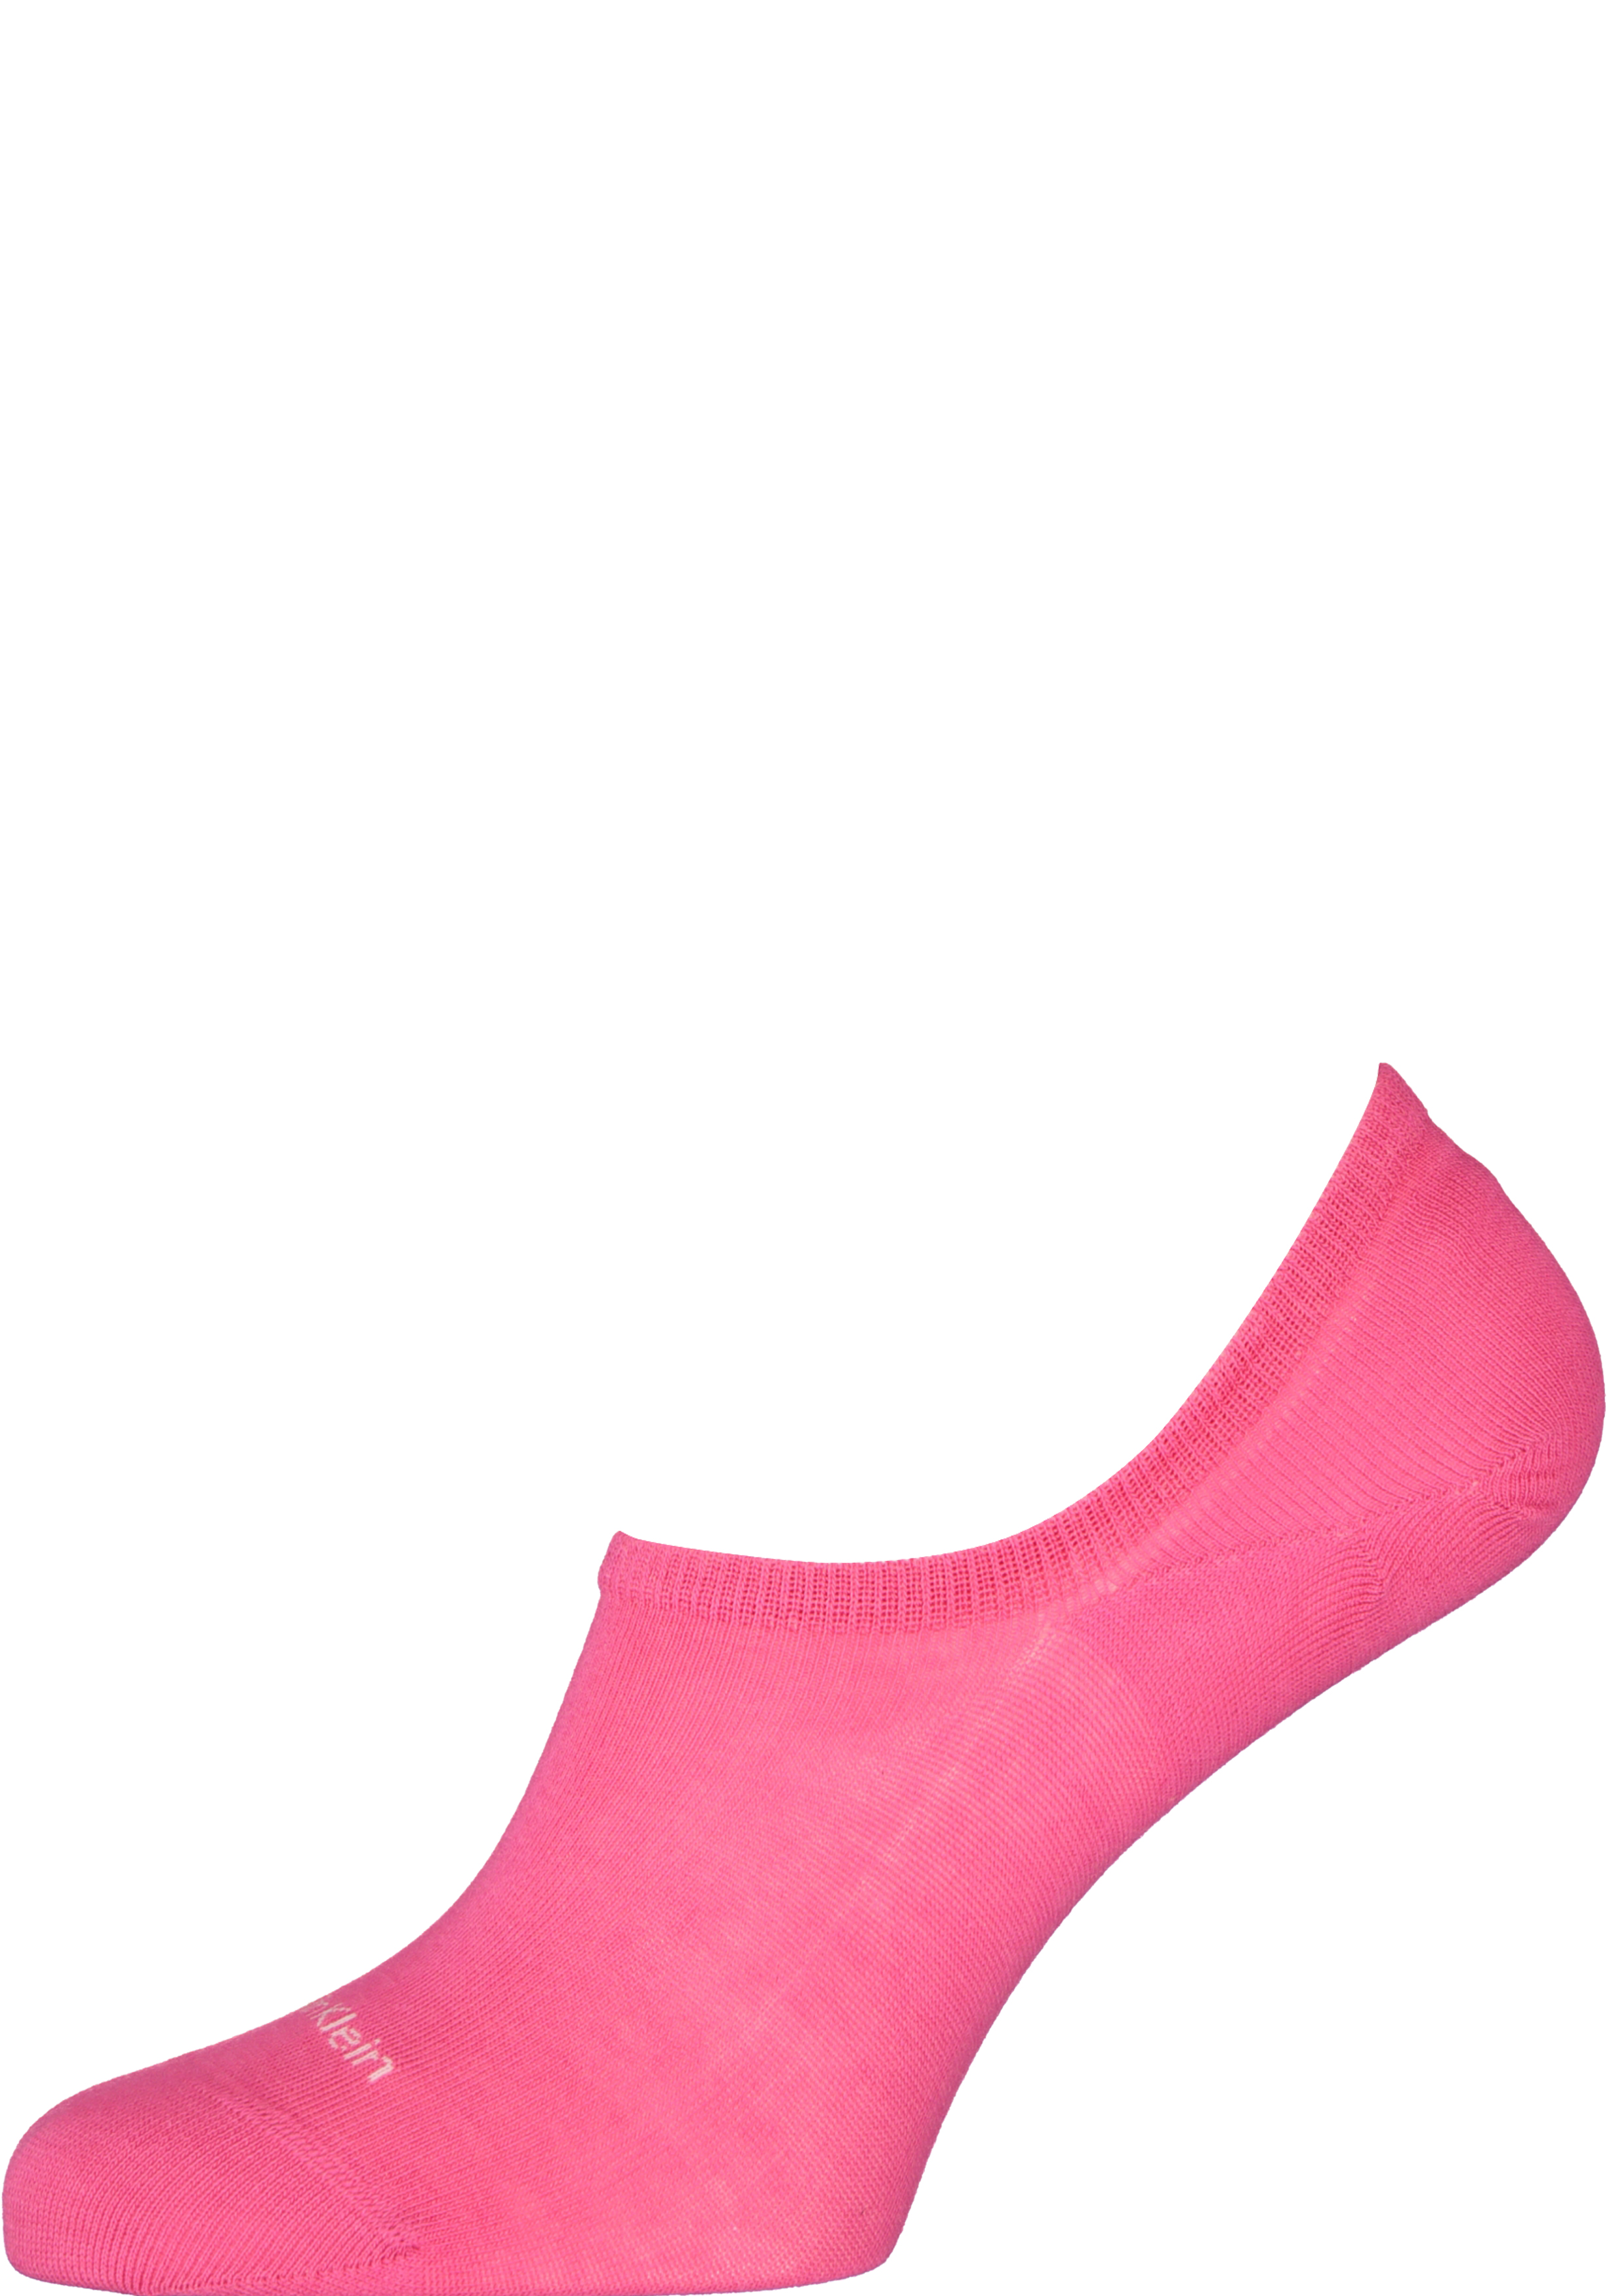 Zich voorstellen Baars Kruiden Calvin Klein damessokken Alice (2-pack), onzichtbare sneakersokken, roze -  vakantie DEALS: bestel vele artikelen van topmerken met korting